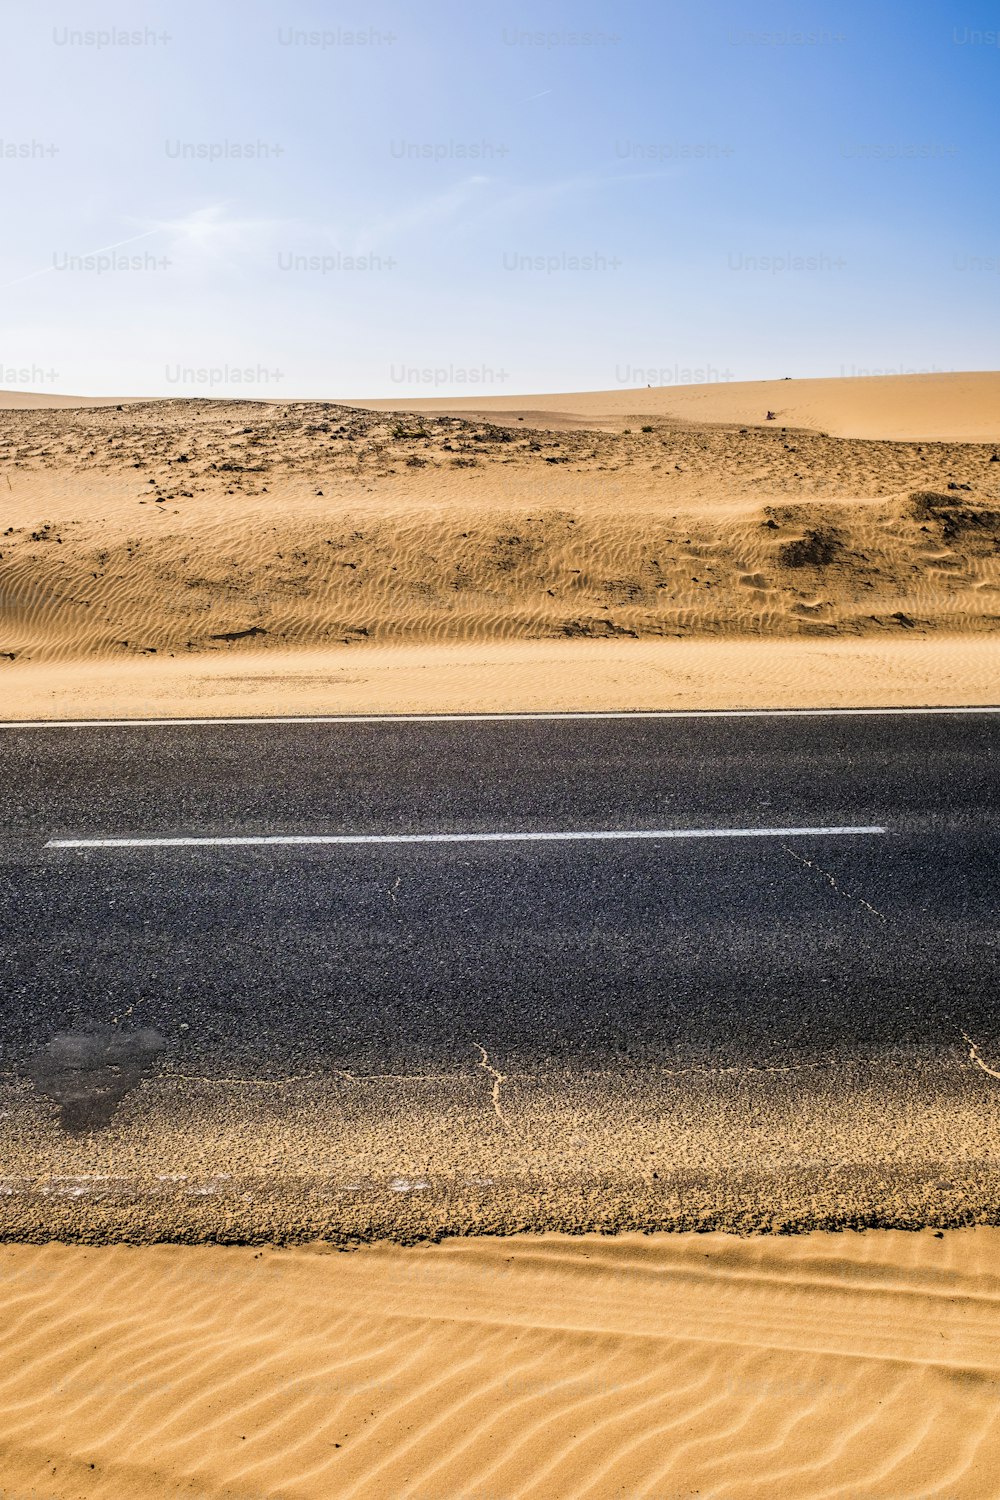 Strada asfaltata nera con dune di sabbia e deserto a sinistra e destra e cielo blu sullo sfondo - concetto di viaggio in un mondo desertico arido a causa di un cattivo futuro di cambiamento climatico - pianeta di emergenza idrica